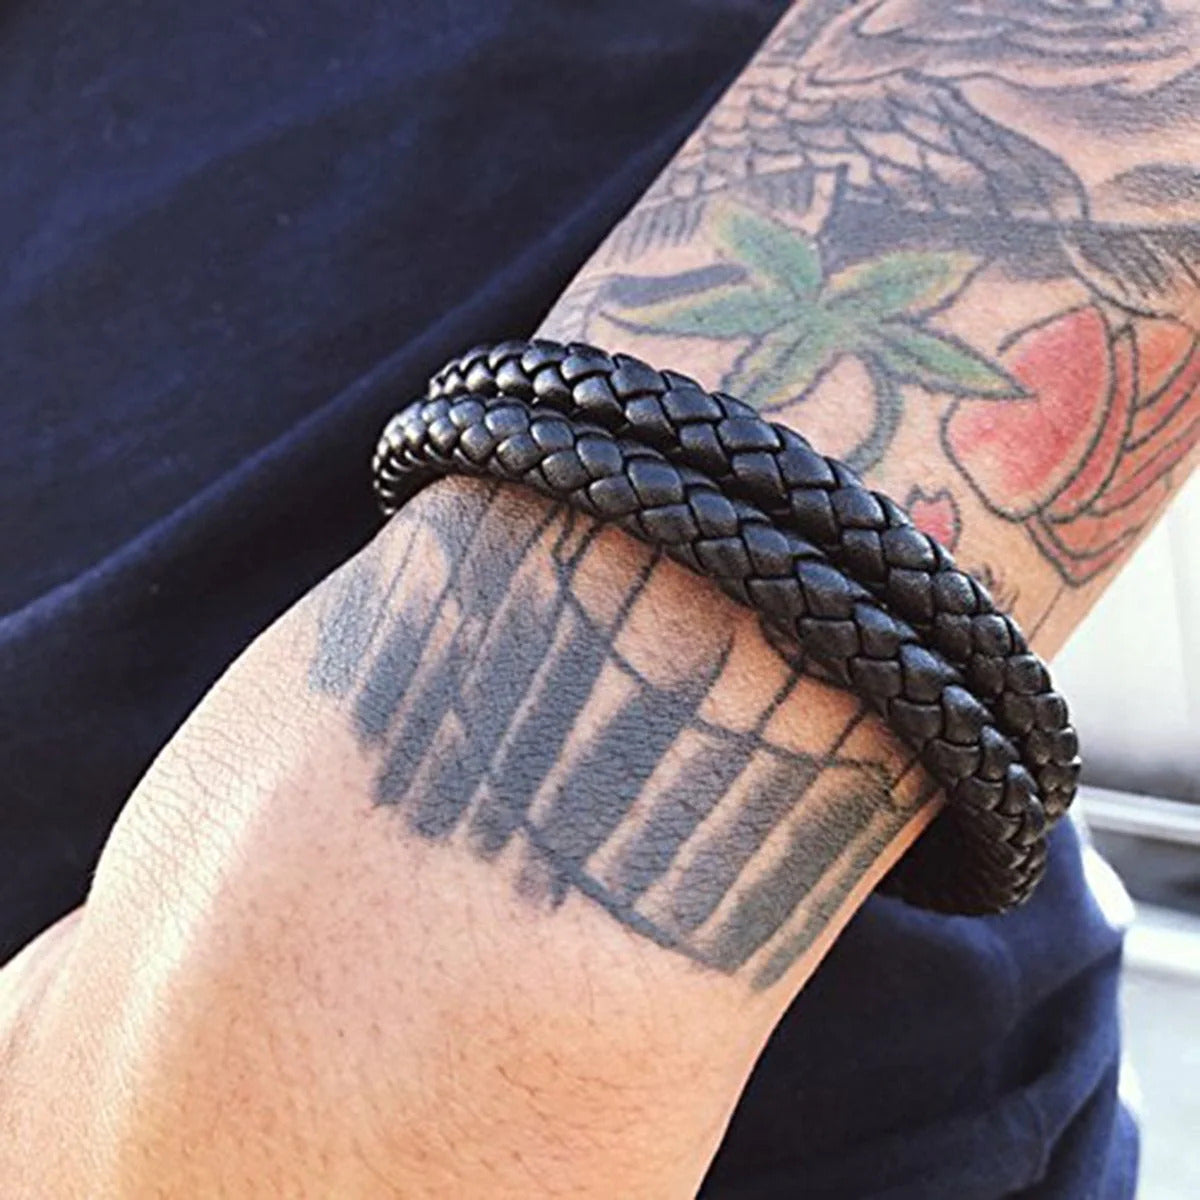 Designer black leather bracelet